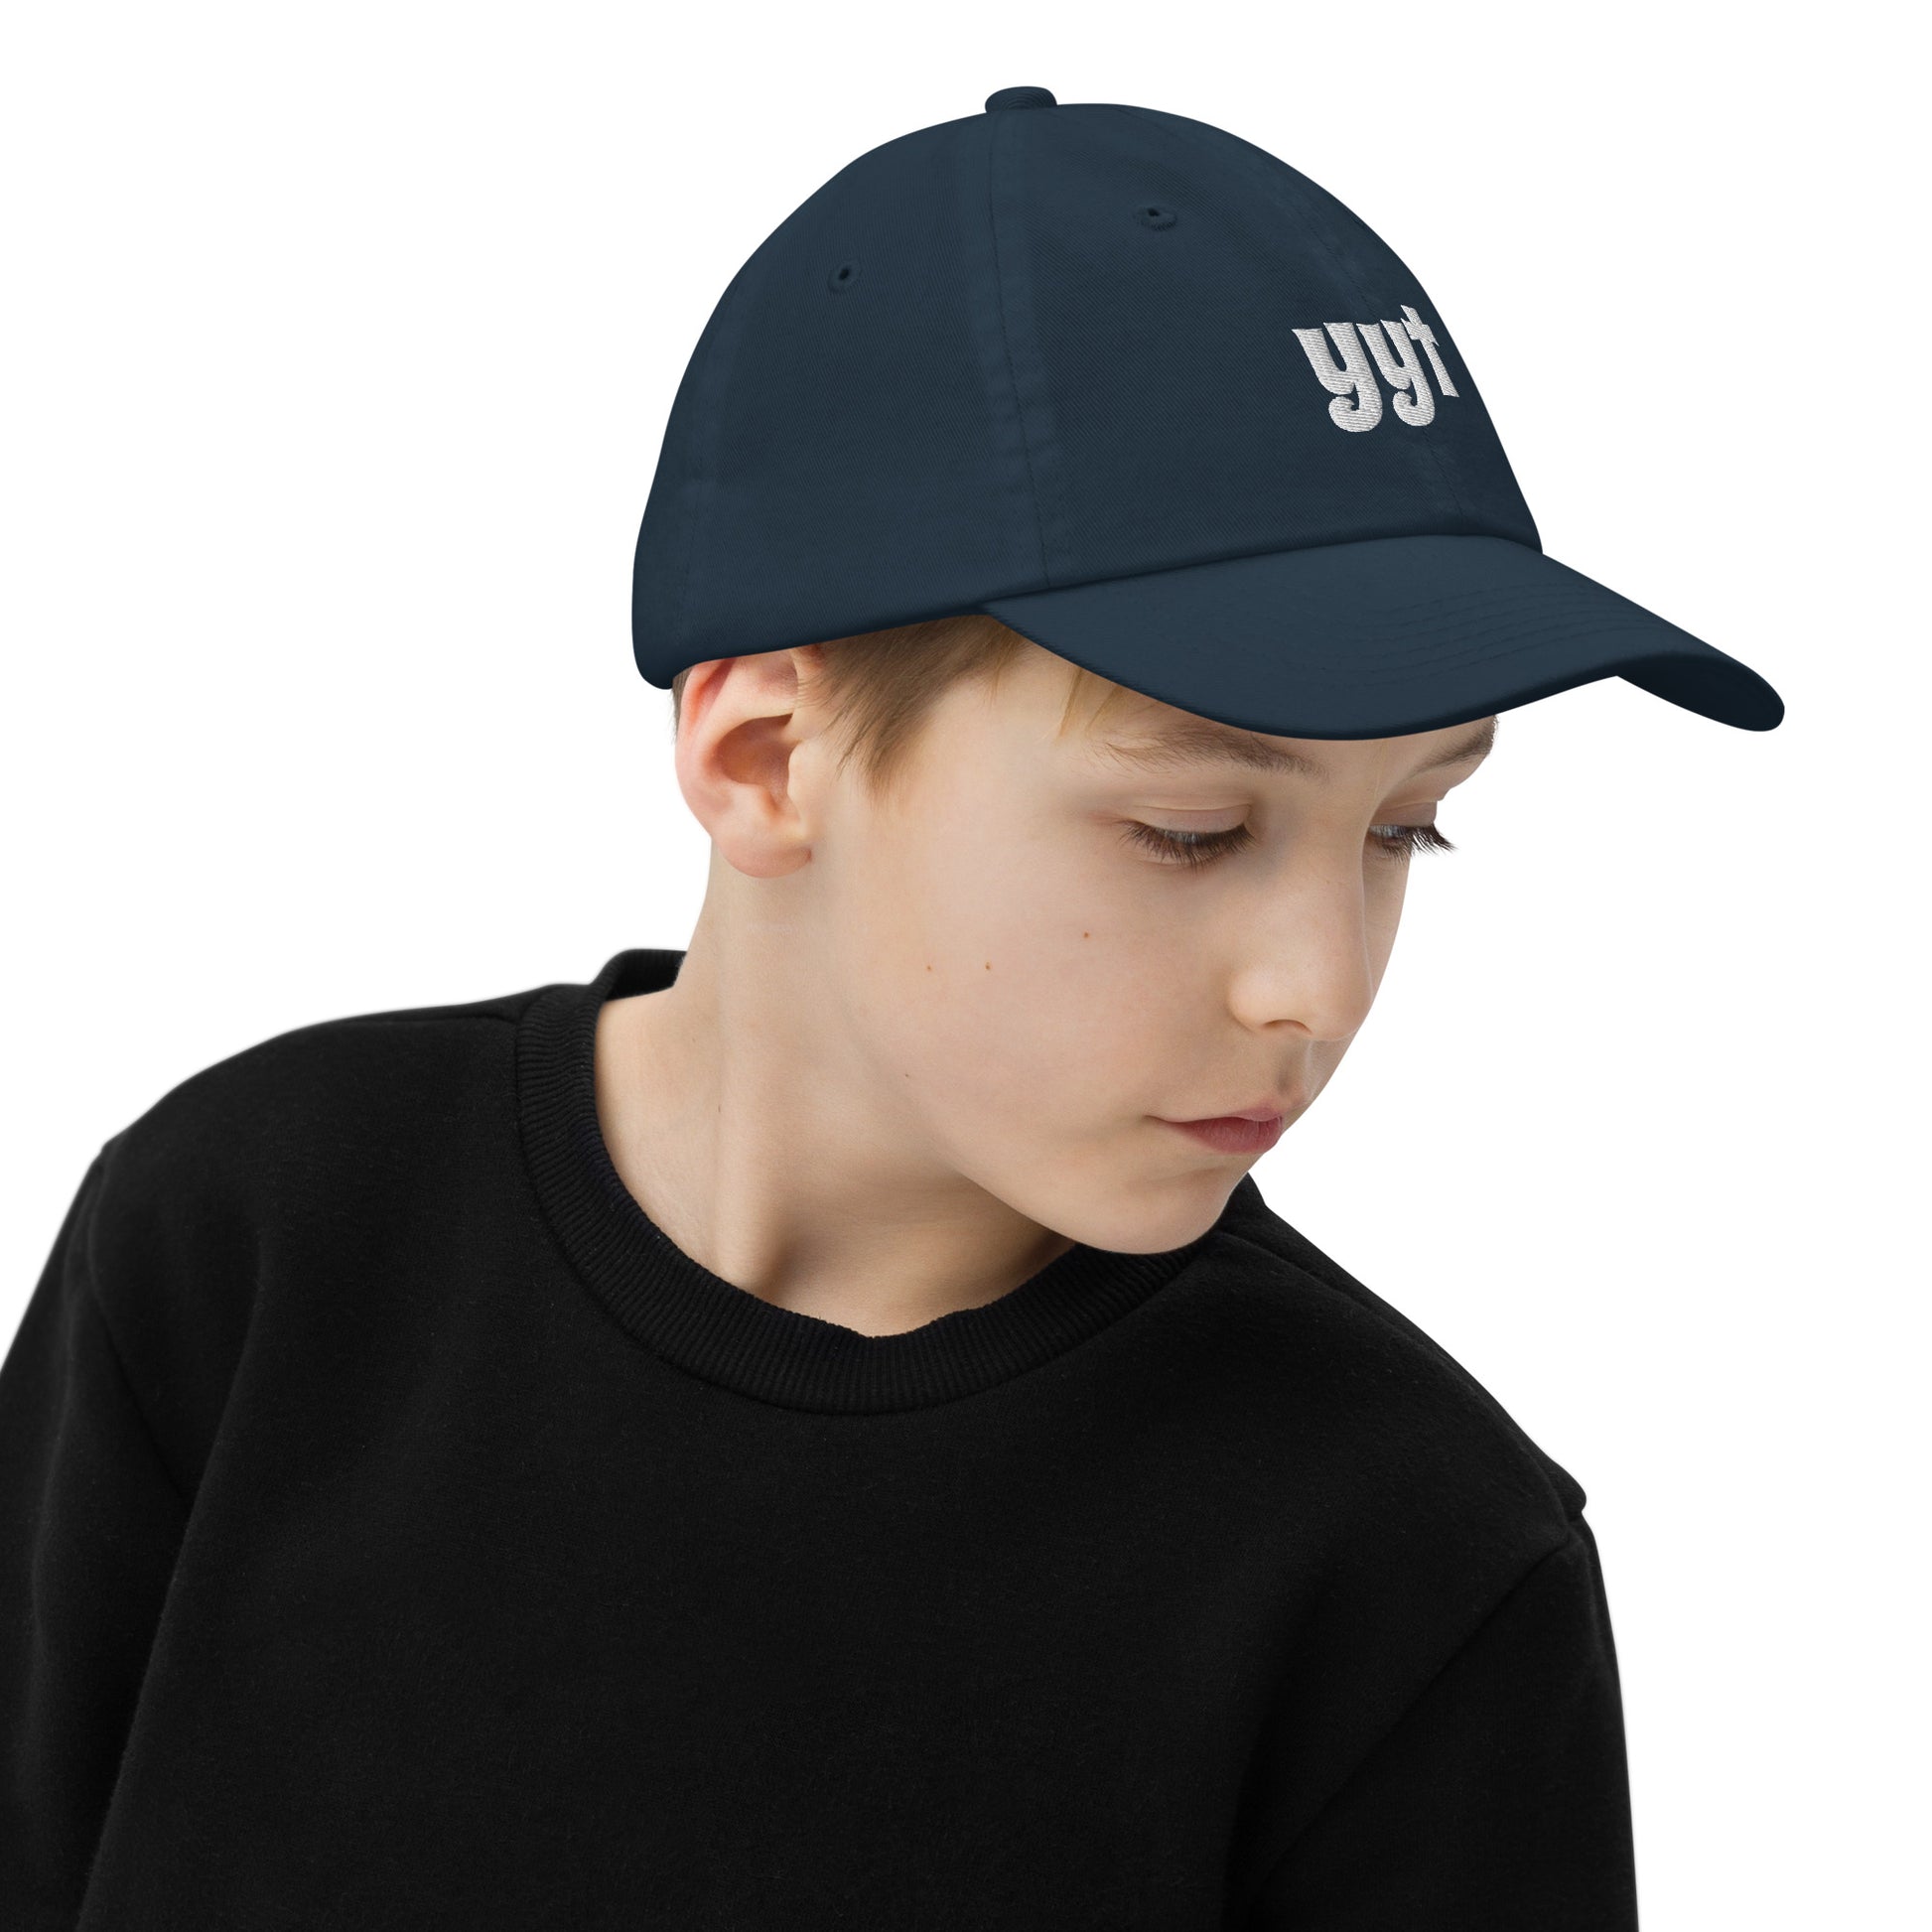 Groovy Kid's Baseball Cap - White • YYT St. John's • YHM Designs - Image 04